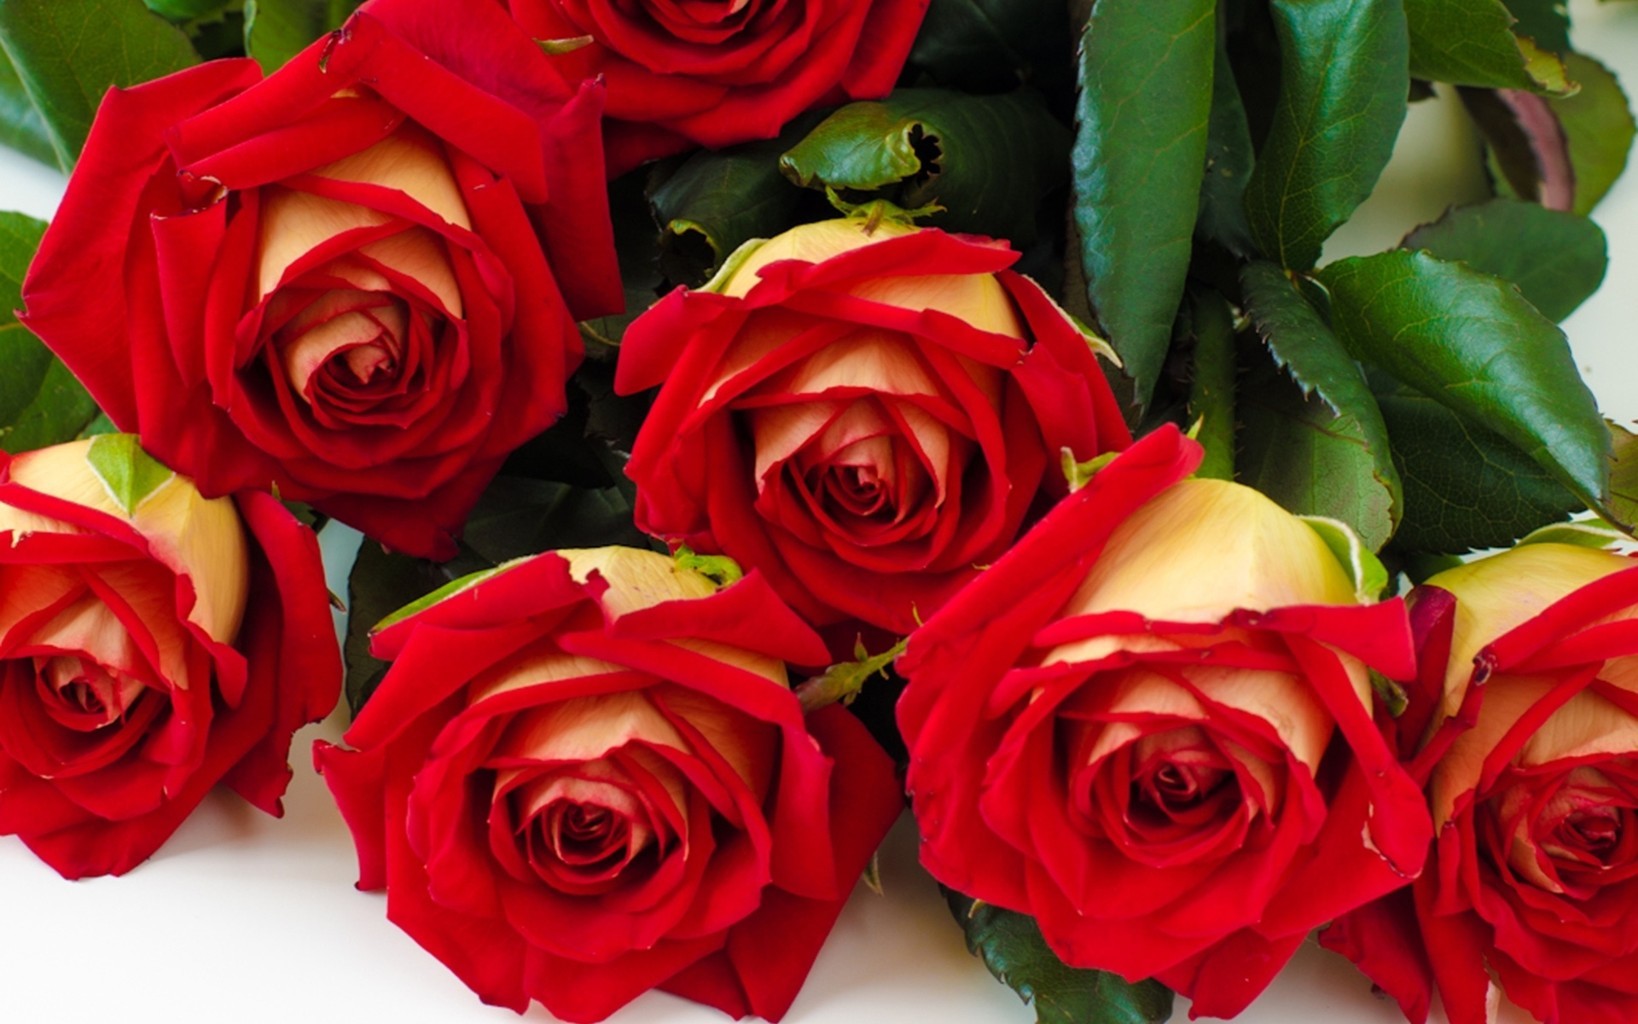 Hoa hồng đỏ thể hiện tình yêu nồng cháy dành tặng cho vợ hoặc bạn gái có tình cảm sâu đậm